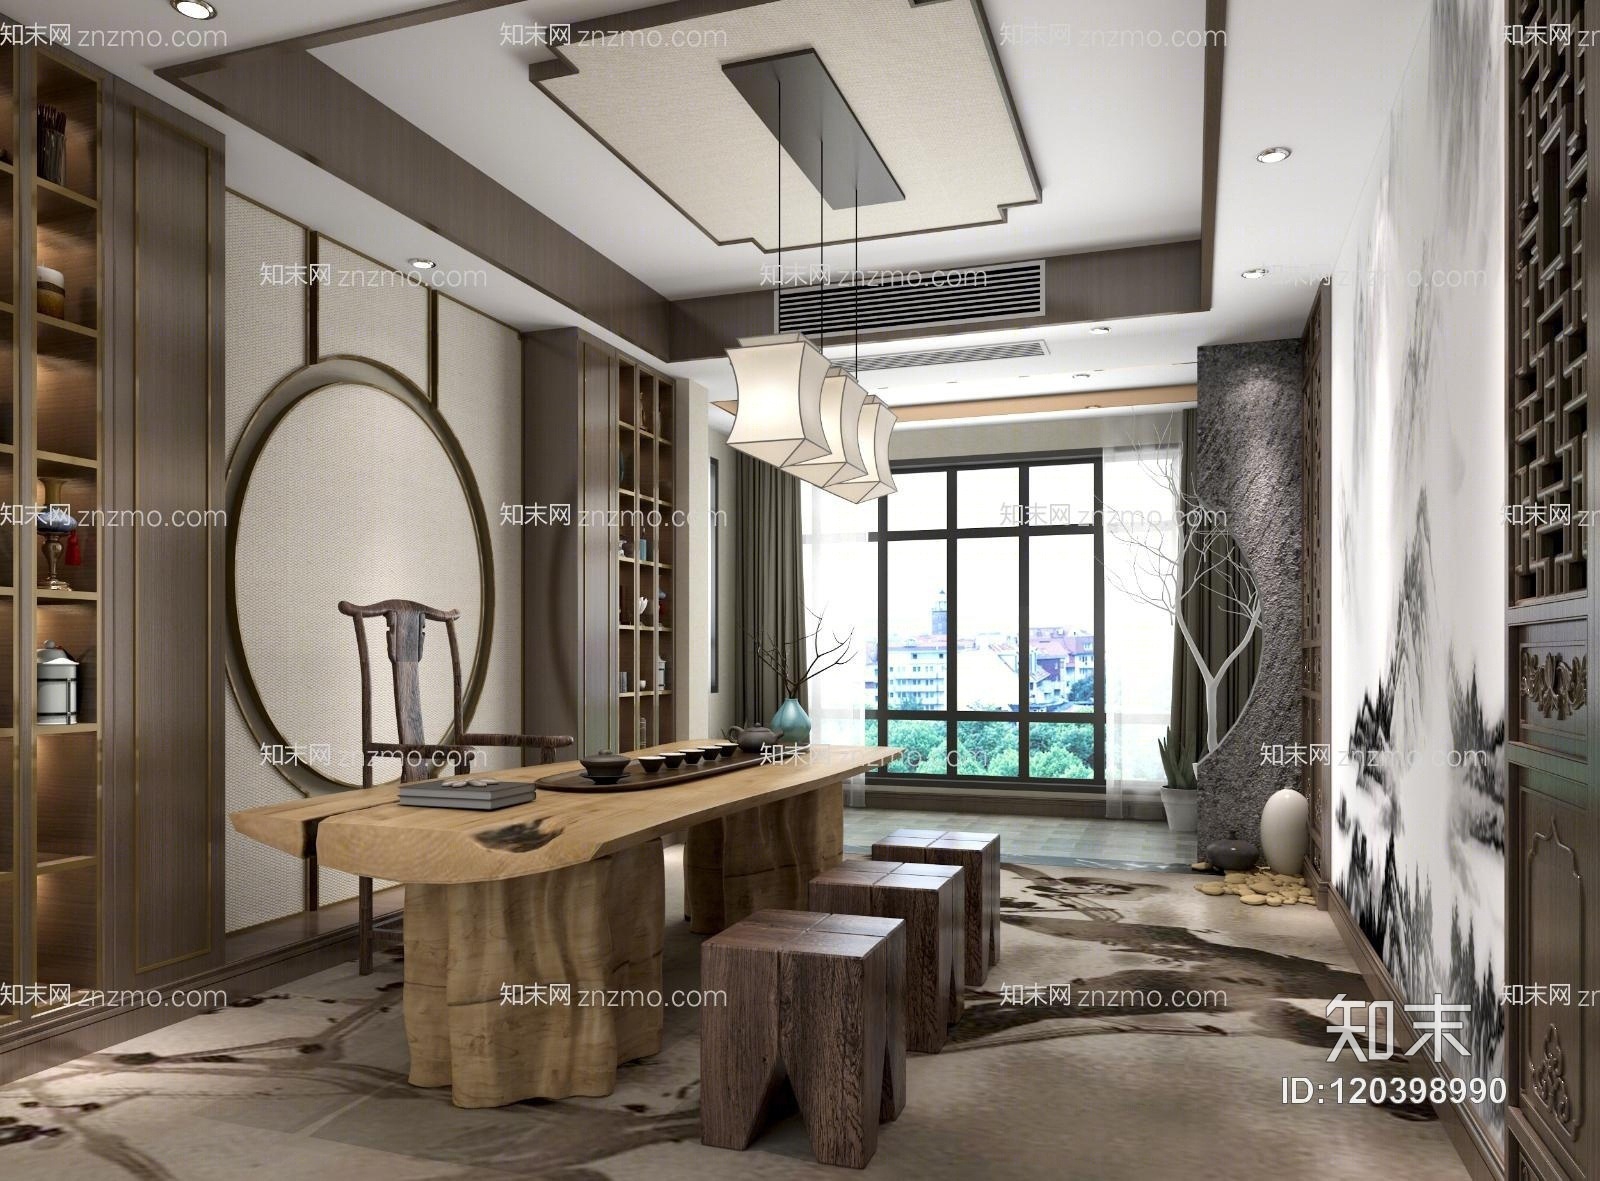 新中式茶室 书房 书桌 茶几 吊灯 装饰品 摆件 墙饰